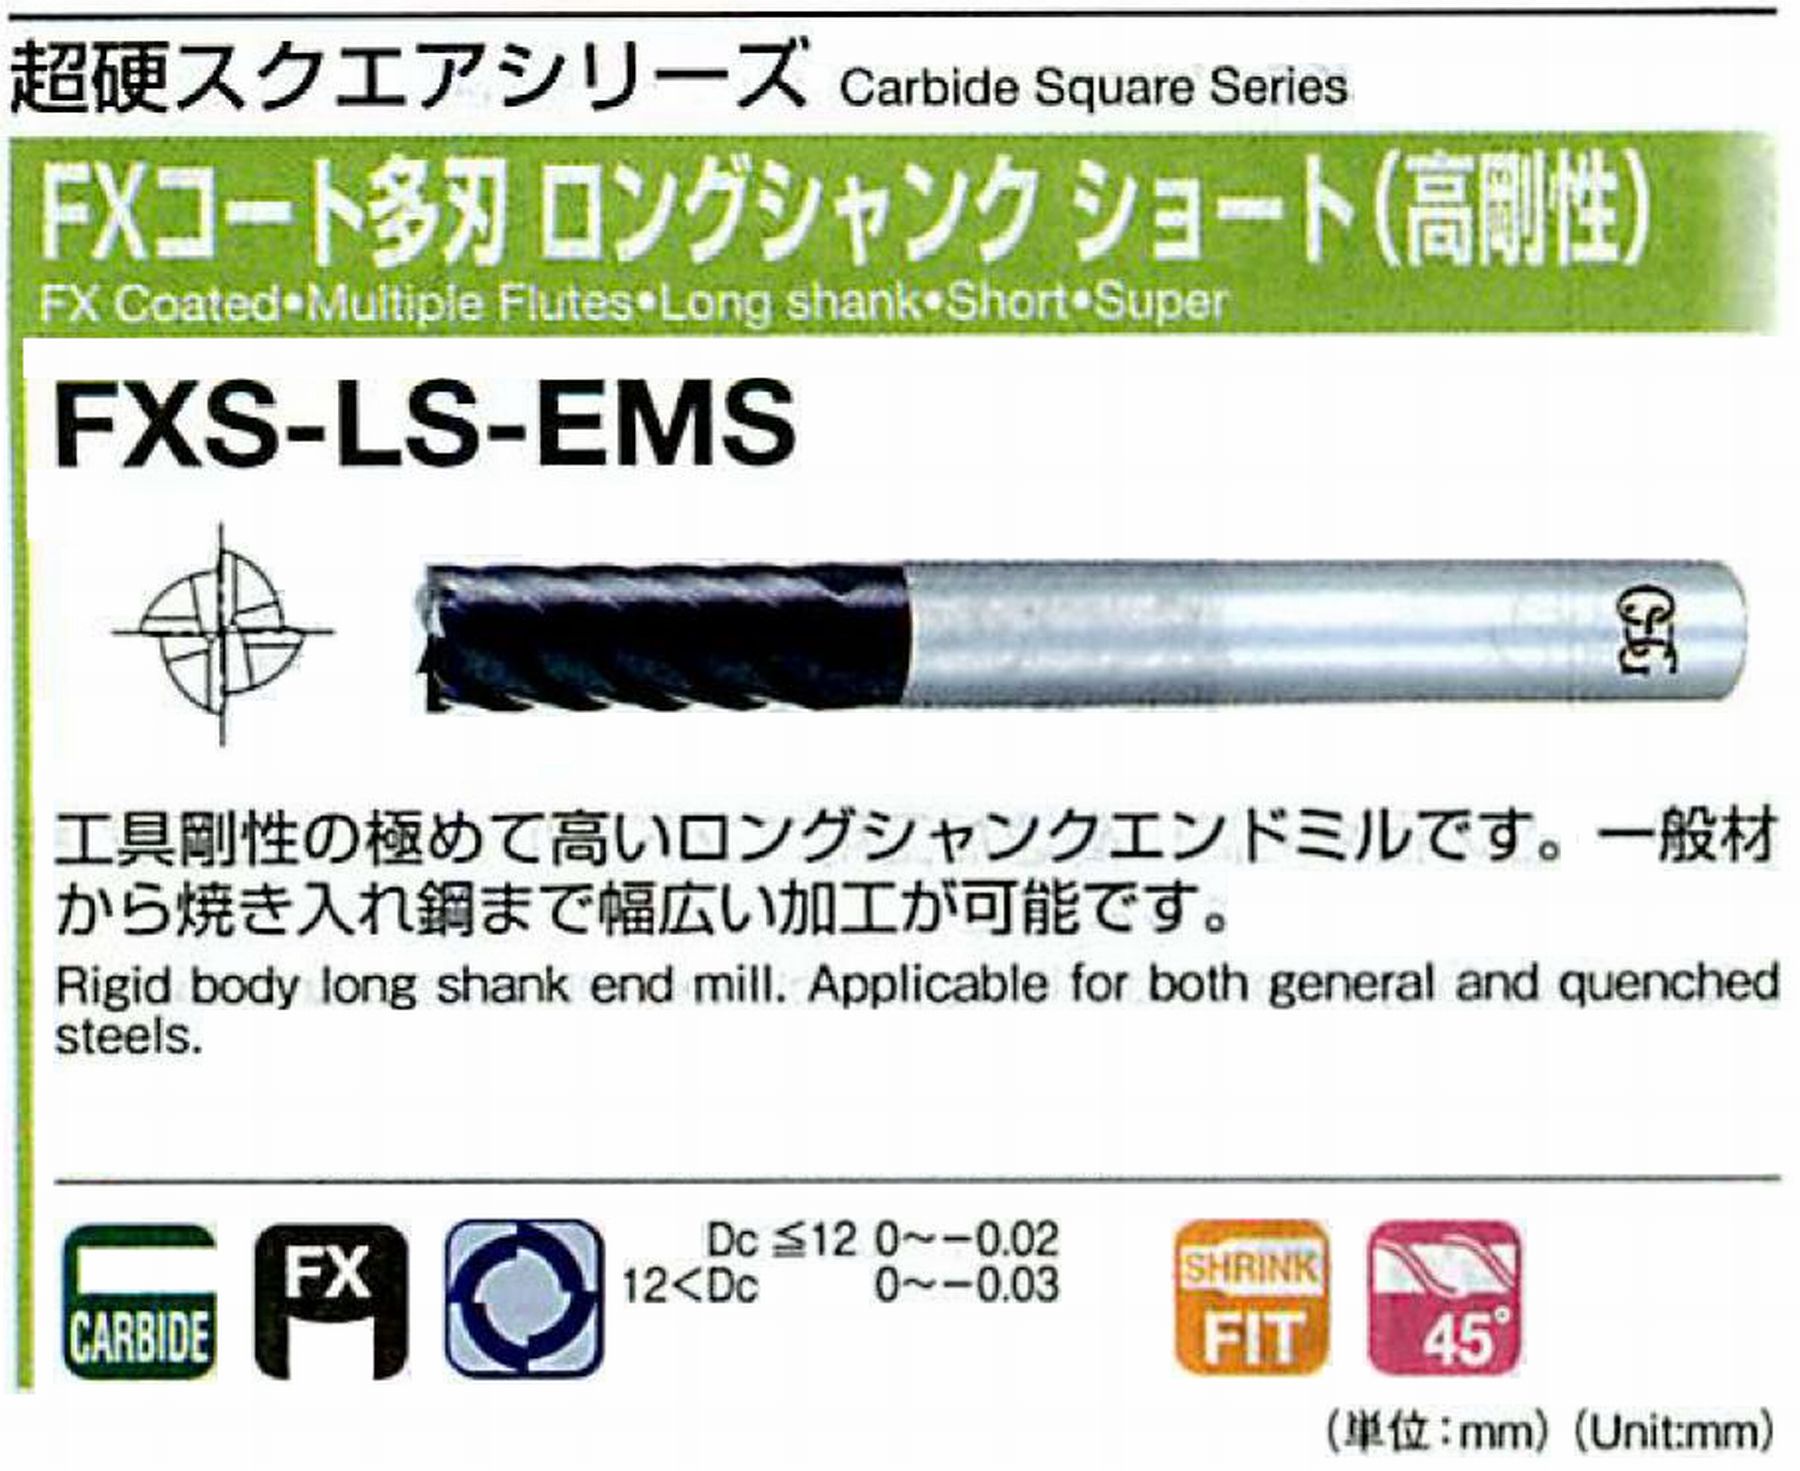 オーエスジー/OSG FXコート多刃 ロングシャンクショート(高剛性) FXS-LS-EMS 外径10 全長100 刃長25 シャンク径10mm 刃数6